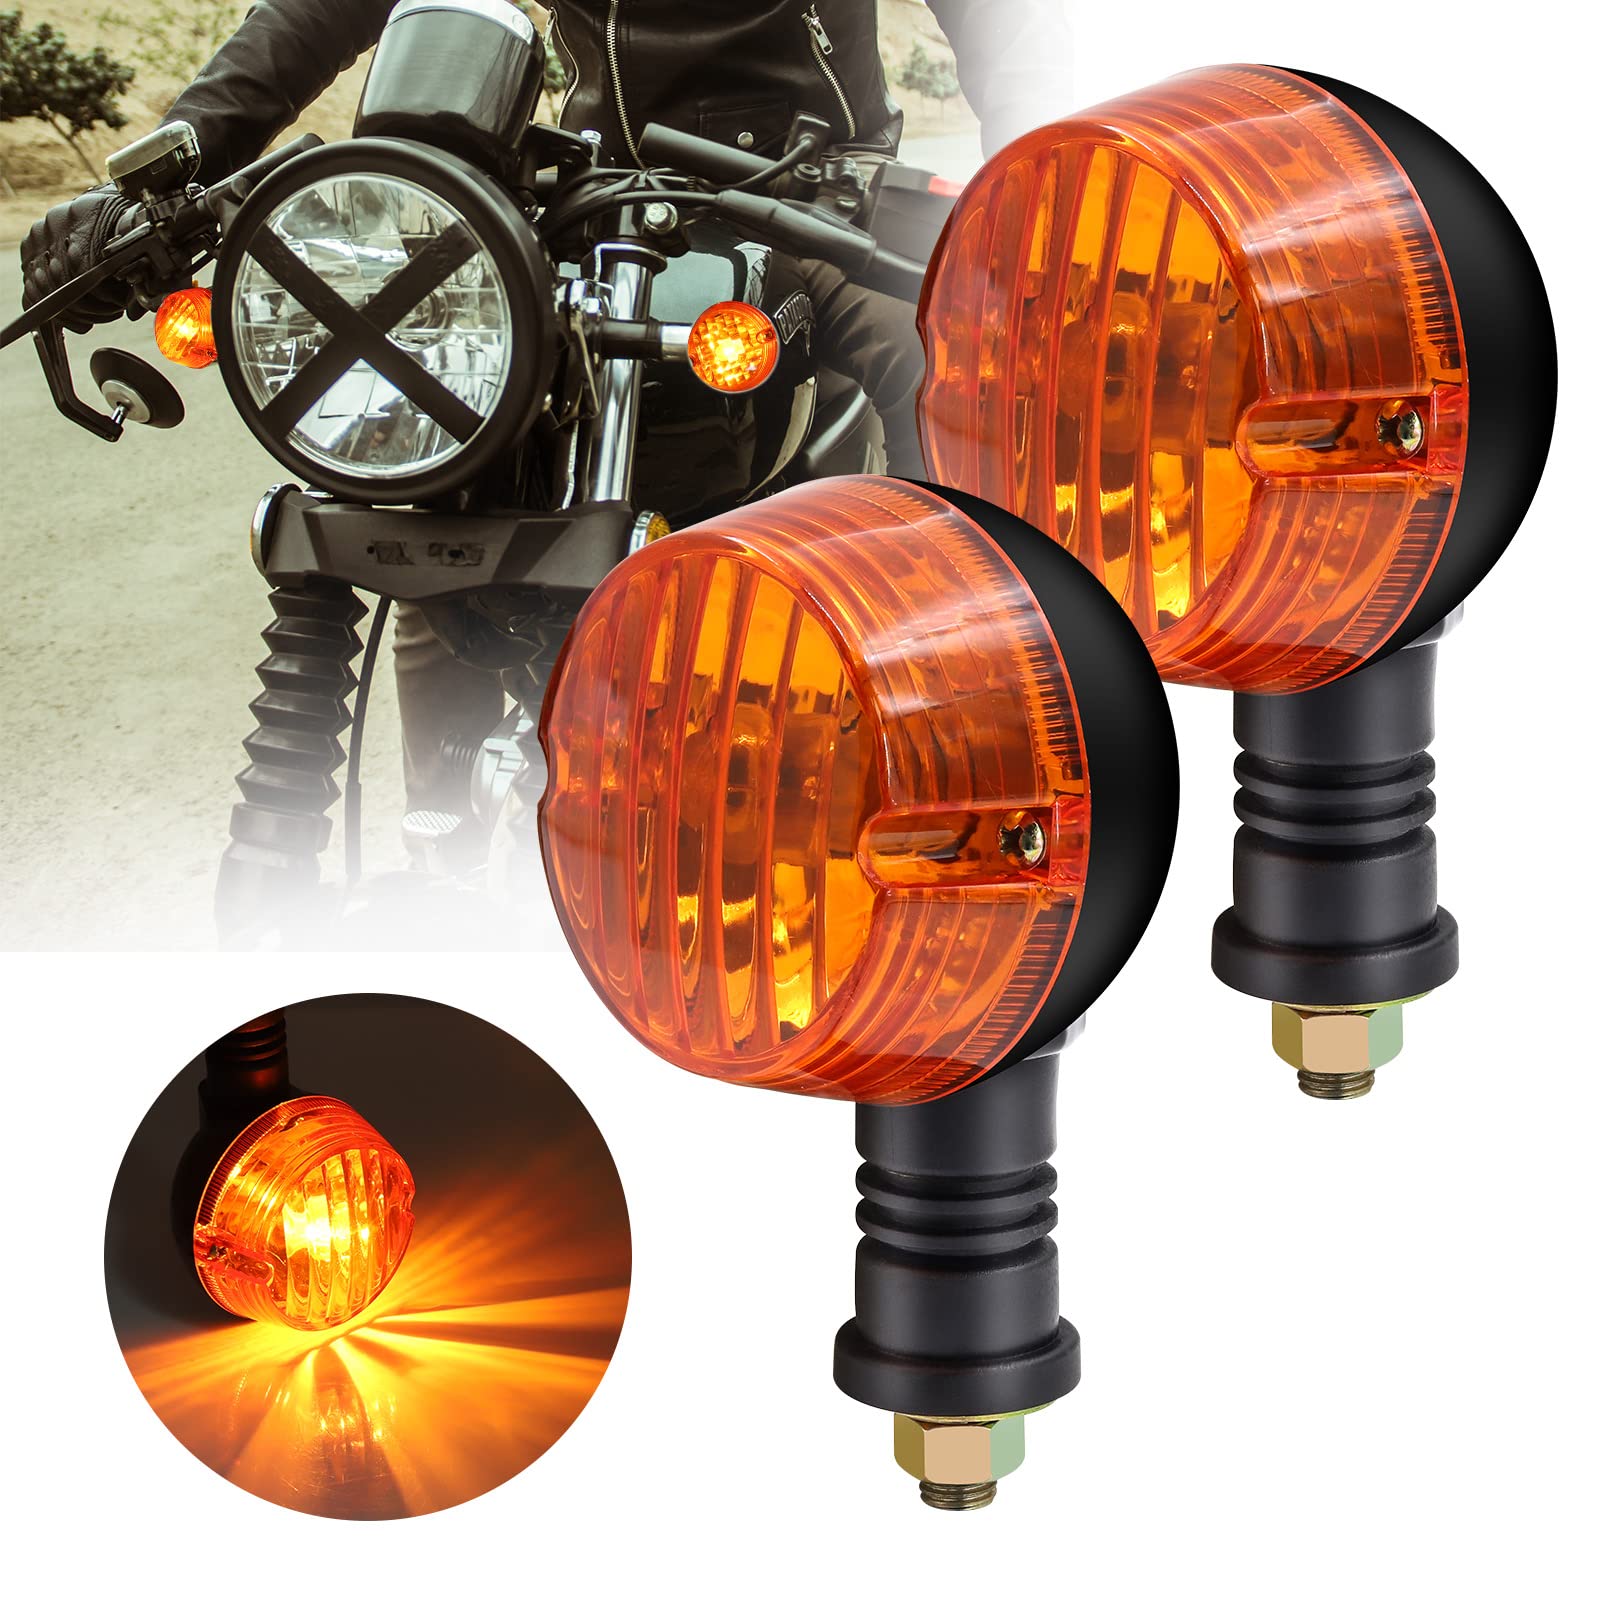 Motorrad-Blinker, 12 V, Retro-Bernstein-Halogenlampe, G-N-125, rund, Motorrad-Blinker, Blinker, kompatibel mit Su-zu-ki H-ar-ley Ka-wasa-ki Ya-ma-ha, 2 Stück von Ourbest